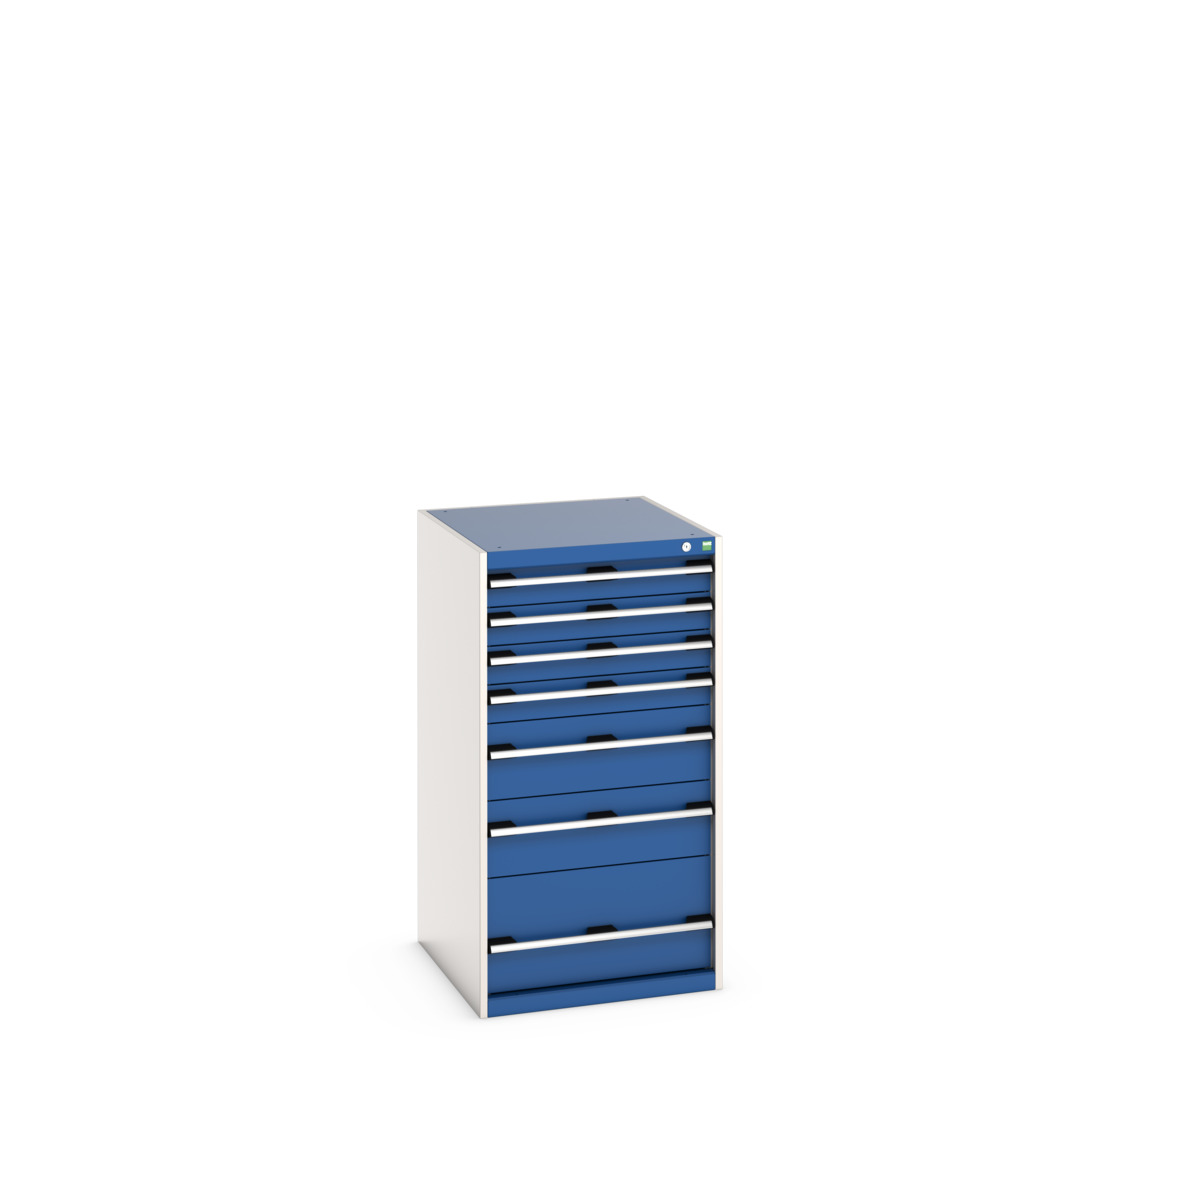 40027037.11V - cubio drawer cabinet